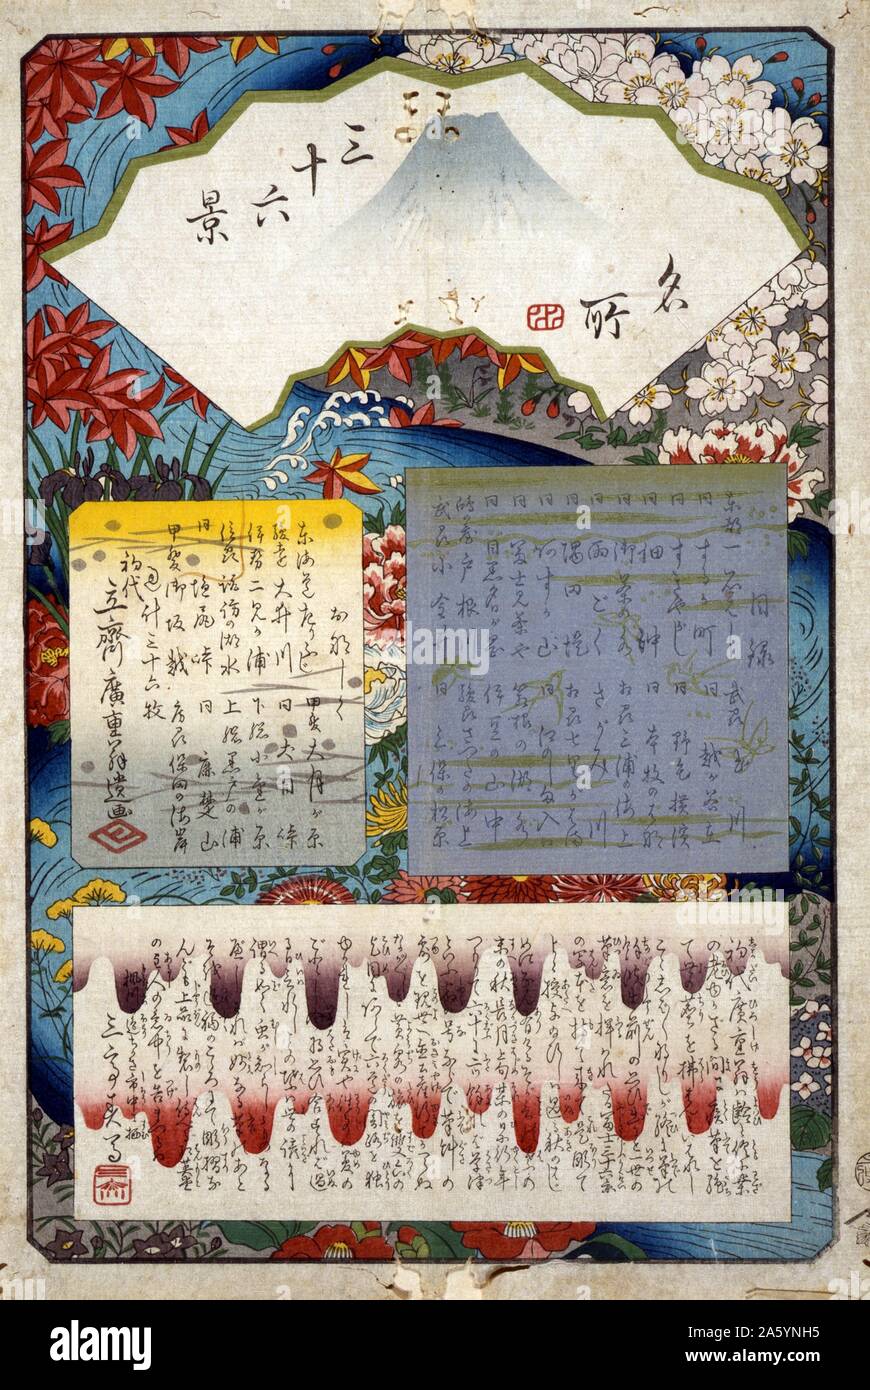 Mokuroku - Pagina del titolo e del sommario. Da Hiroshige, 1797-1858, artista giapponese. Data 1858. xilografia, colore che mostra una ventola mostrata con la vista del Monte Fuji e separare i fogli di testo sovrapposto su uno sfondo di un fiume vorticoso con fiori che crescono lungo le rive. Pagina del titolo e sommario di un catalogo di stampe dalla serie: Fuji sanjurokkei : 36 viste del monte Fuji da Hiroshige. Foto Stock